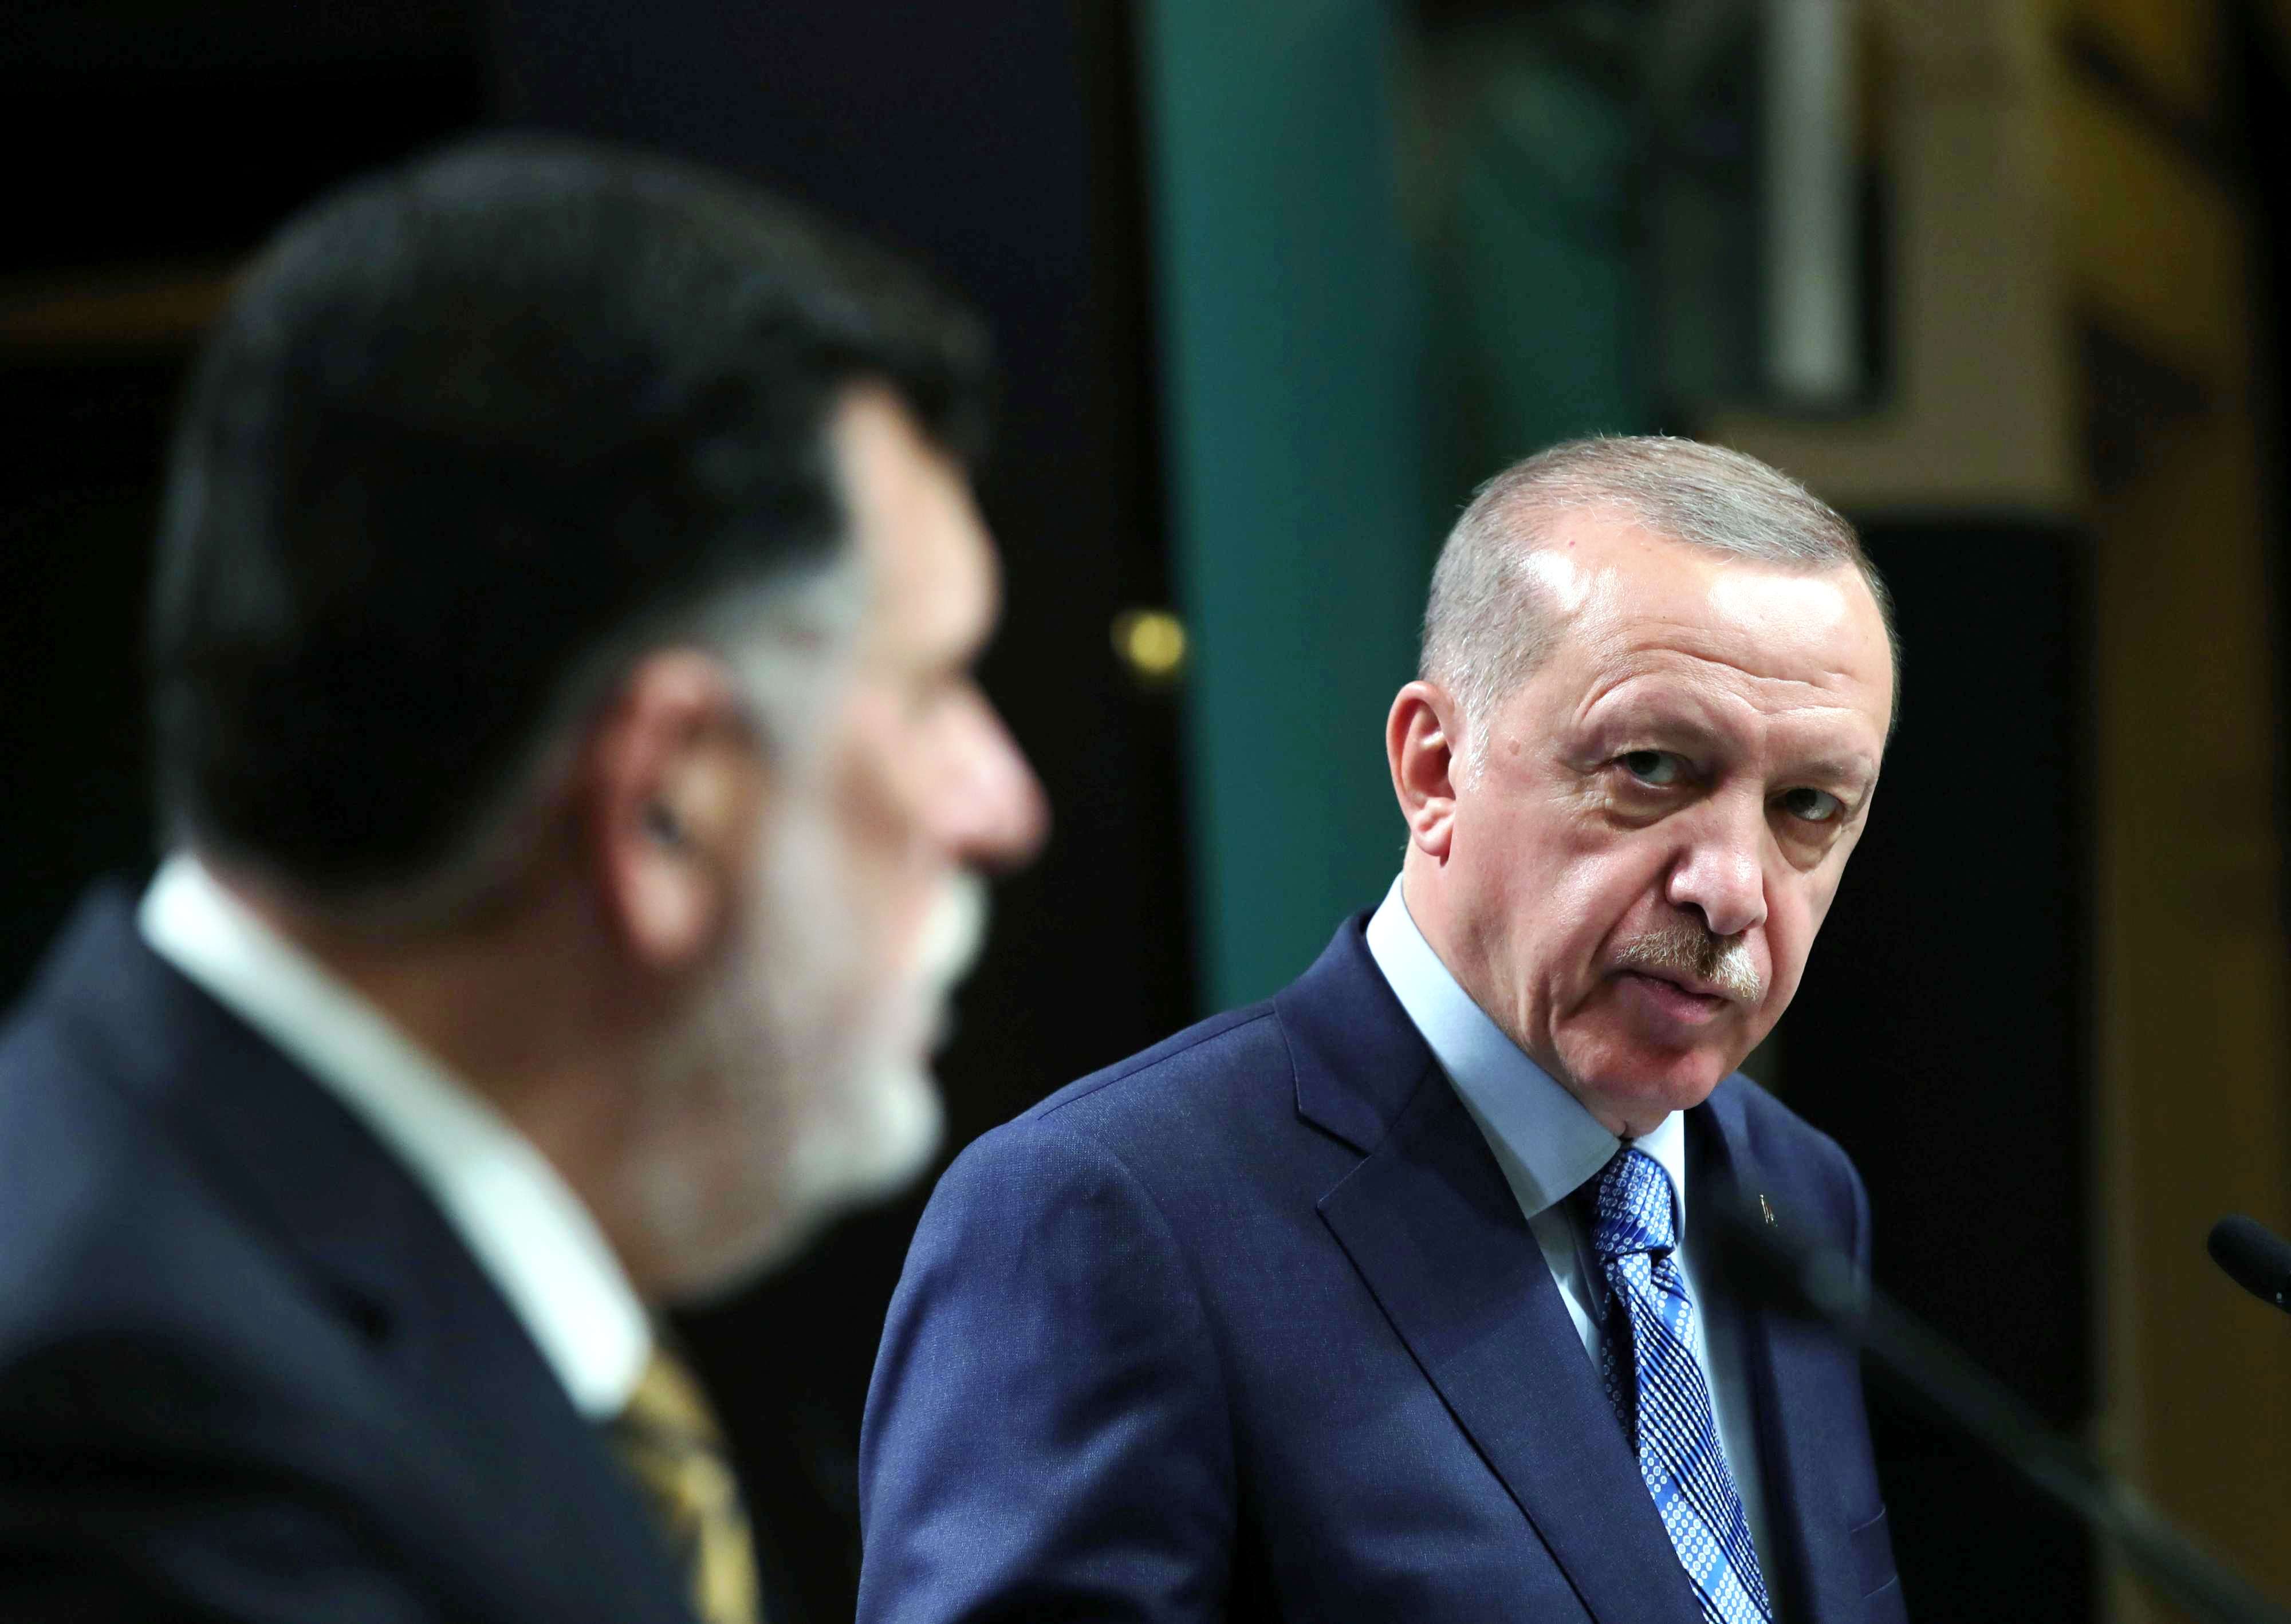 الرئيس التركي رجب طيب أردوغان ورئيس حكومة الوفاق فايز السراج